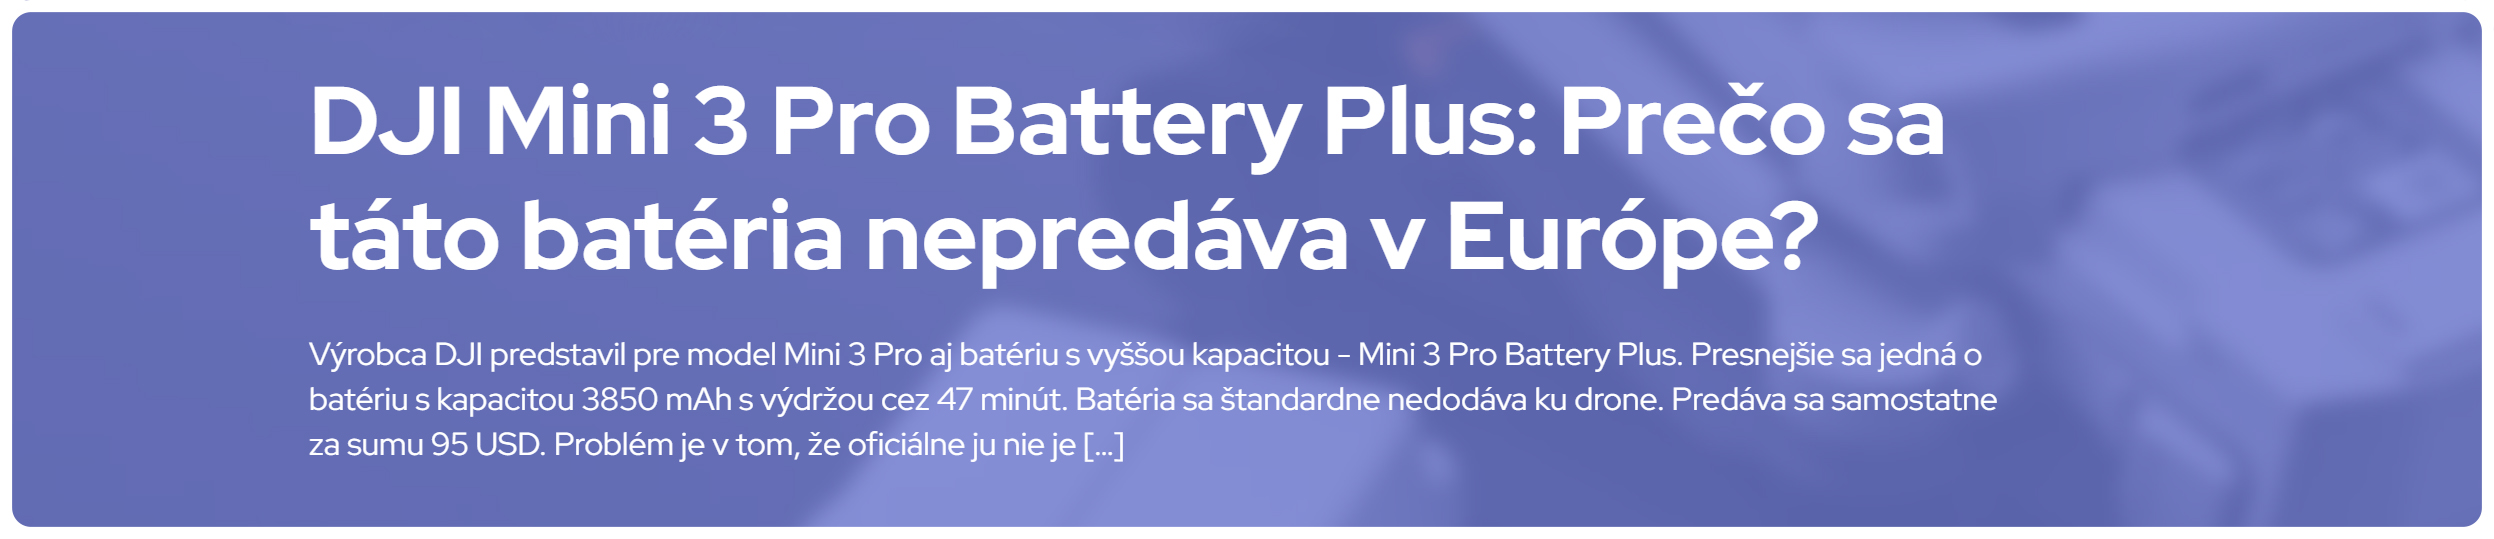 DJI Mini 3 Pro Battery Plus_blog